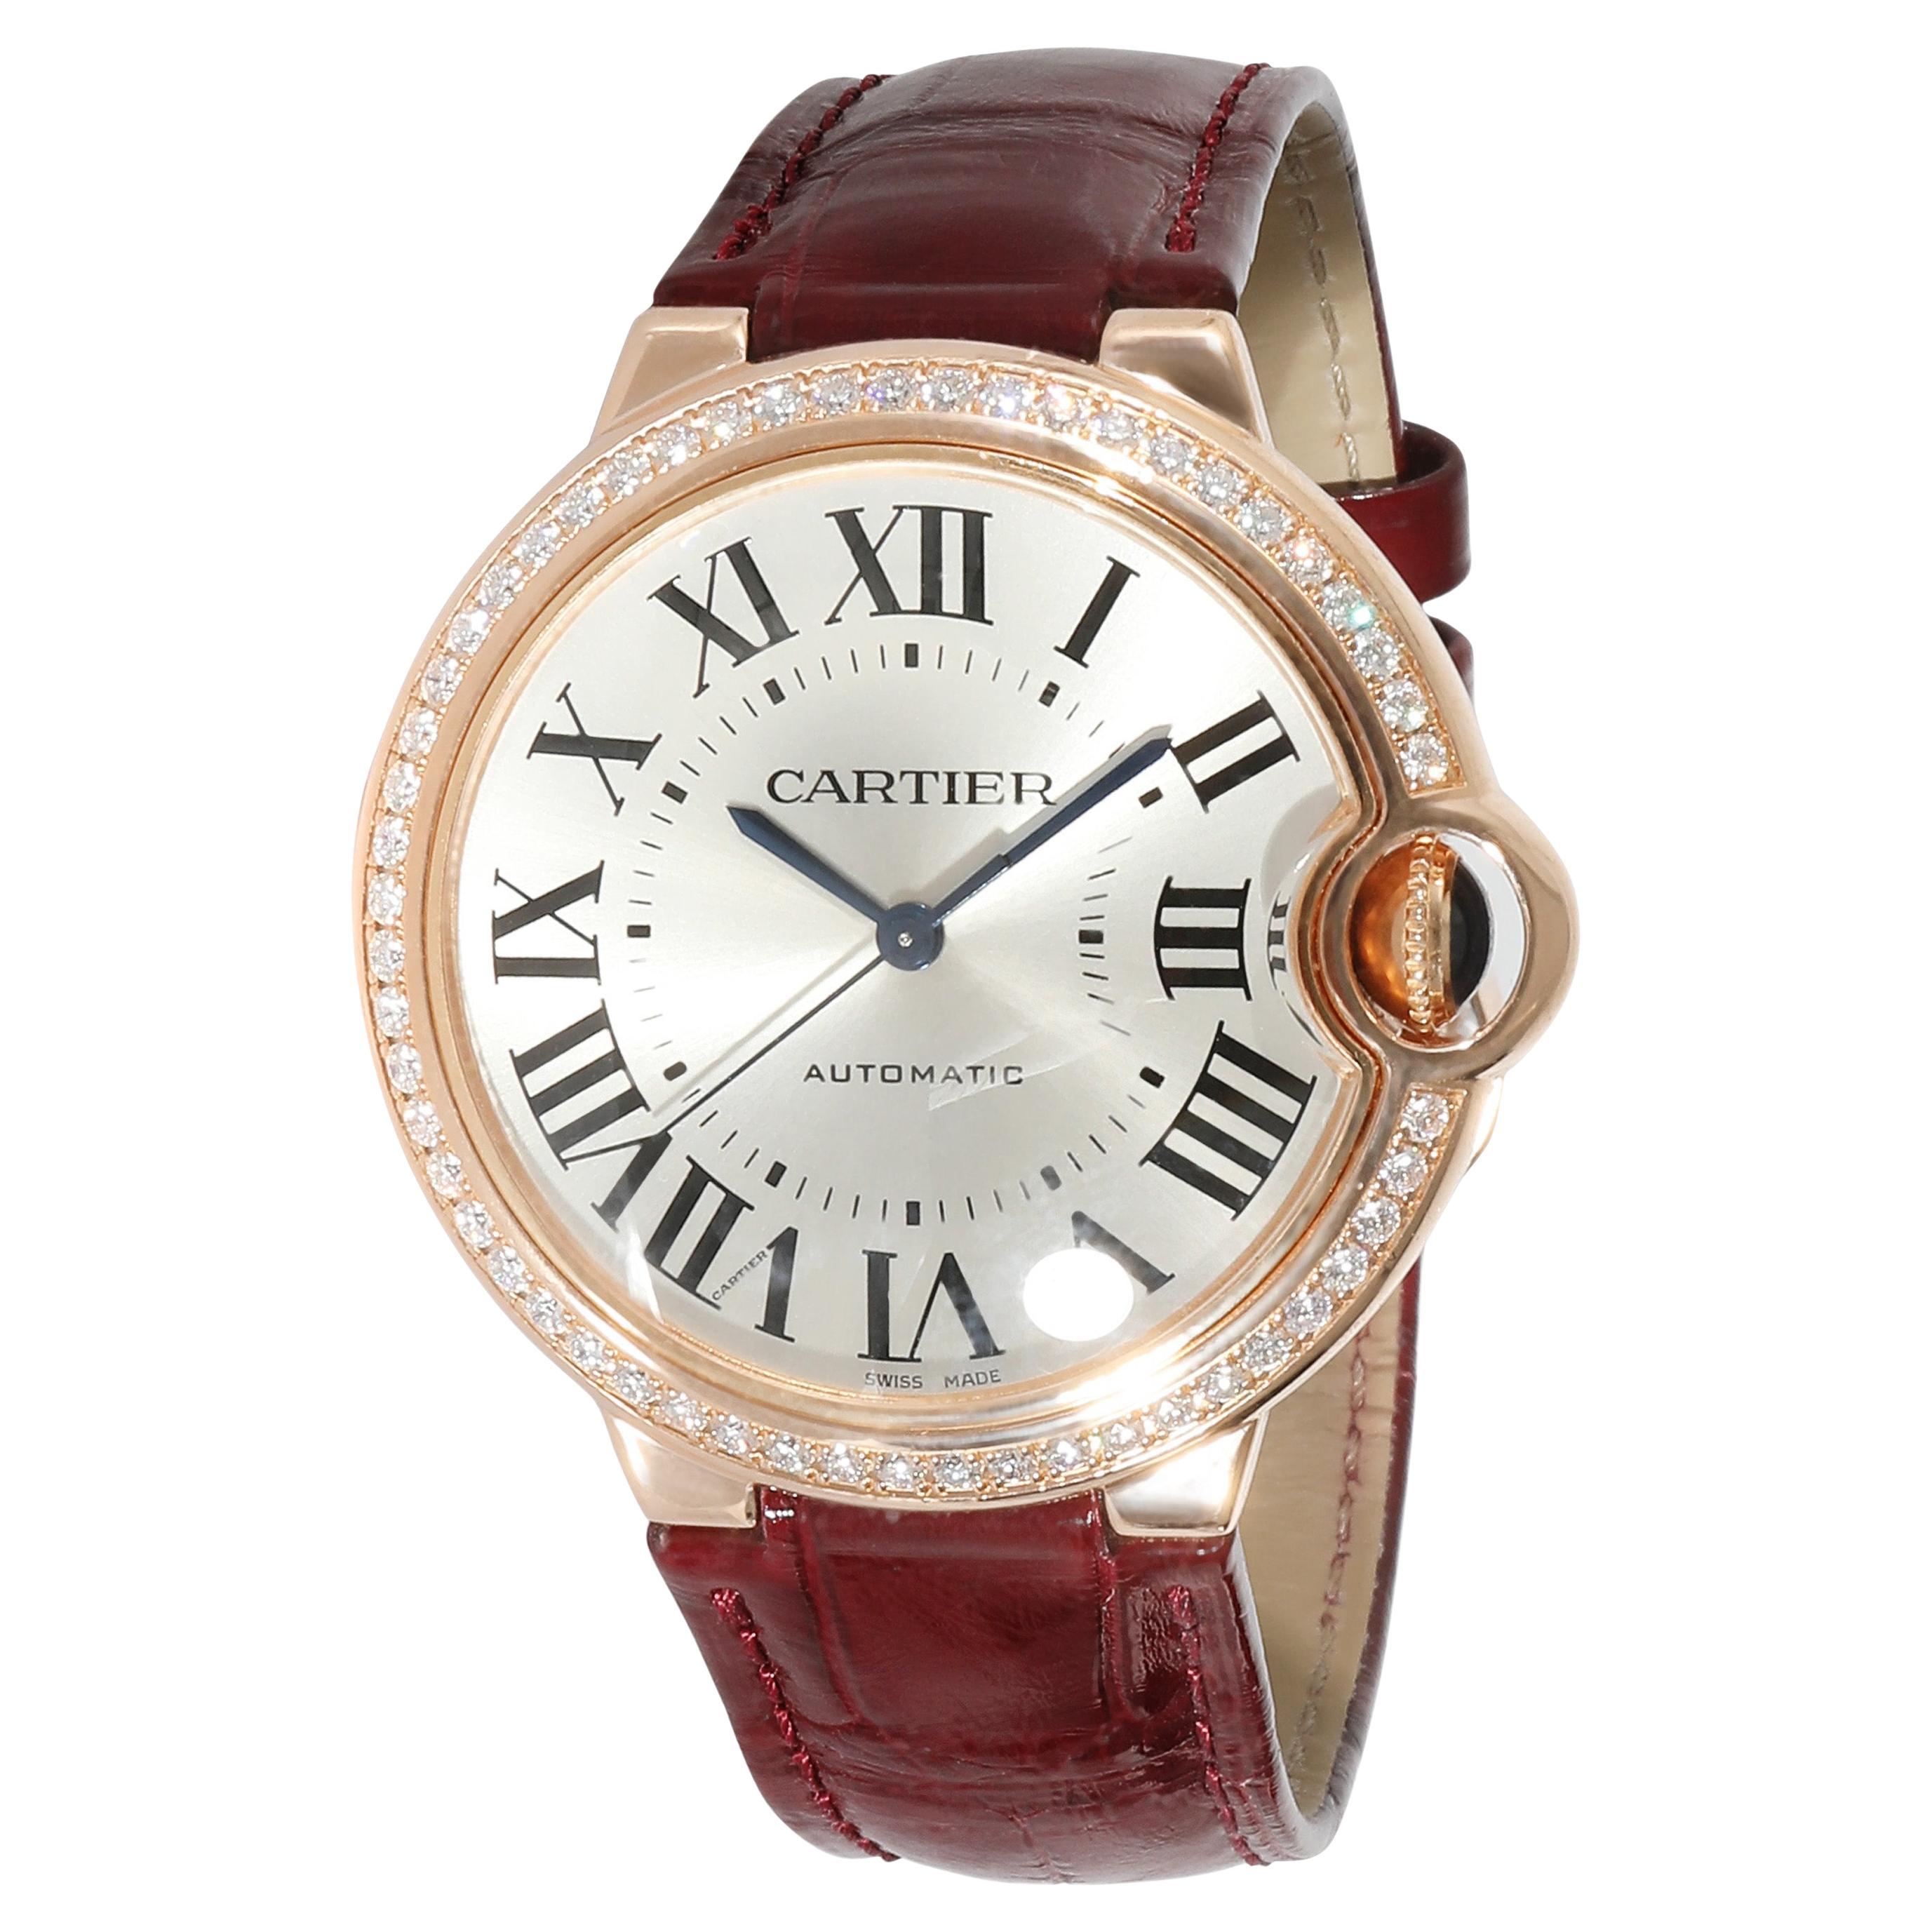 Cartier Ballon Bleu WJBB0034 Unisex Watch in 18kt Rose Gold